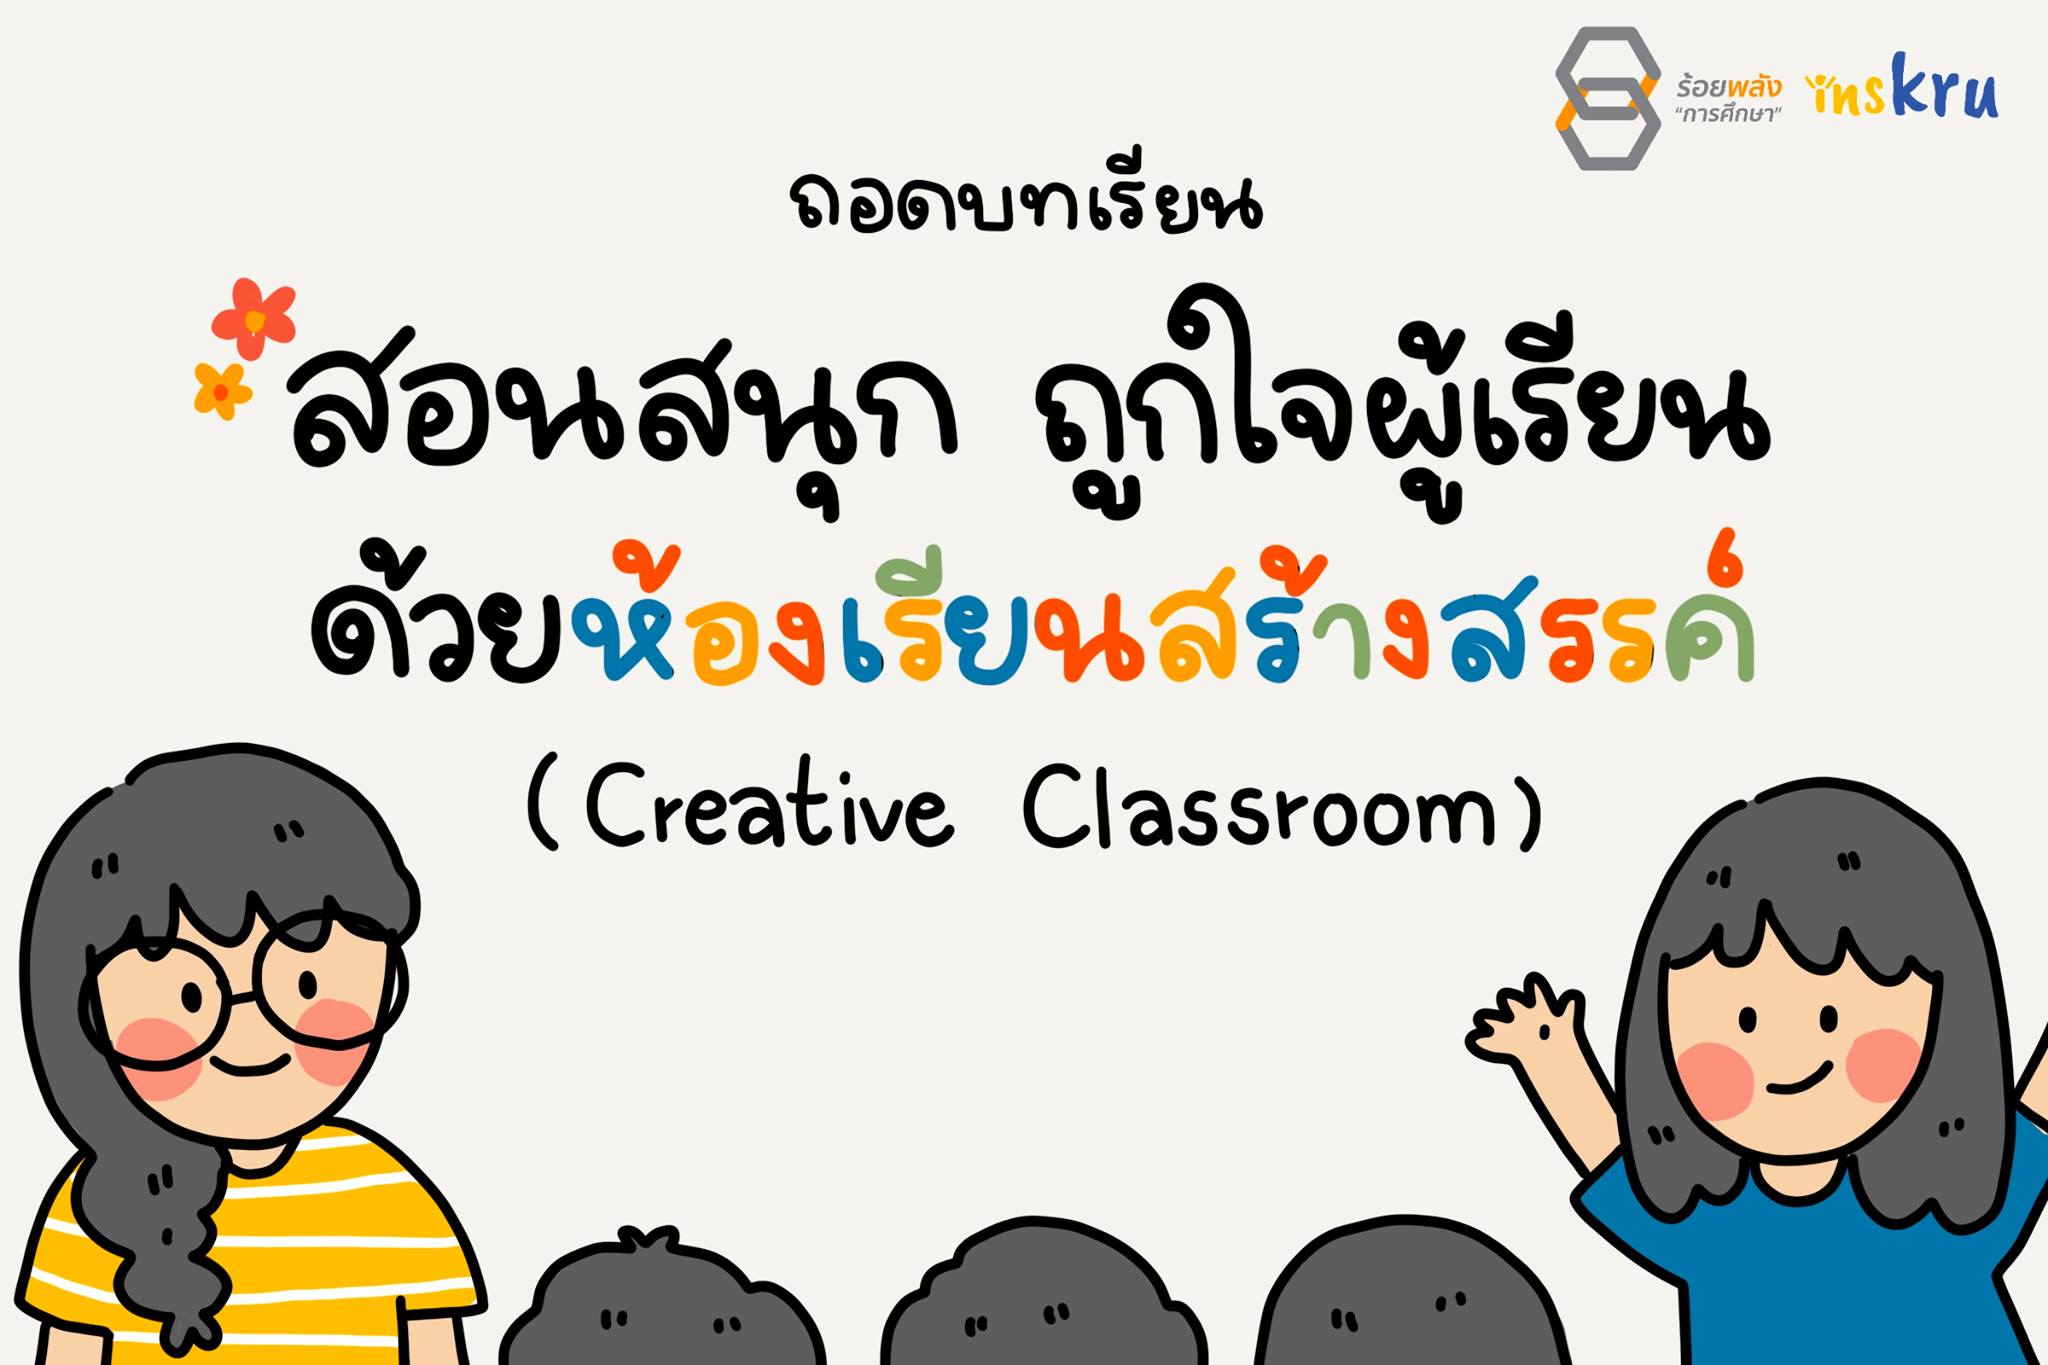 ภาพประกอบไอเดีย สอนสนุกถูกใจผู้เรียนด้วยห้องเรียนสร้างสรรค์